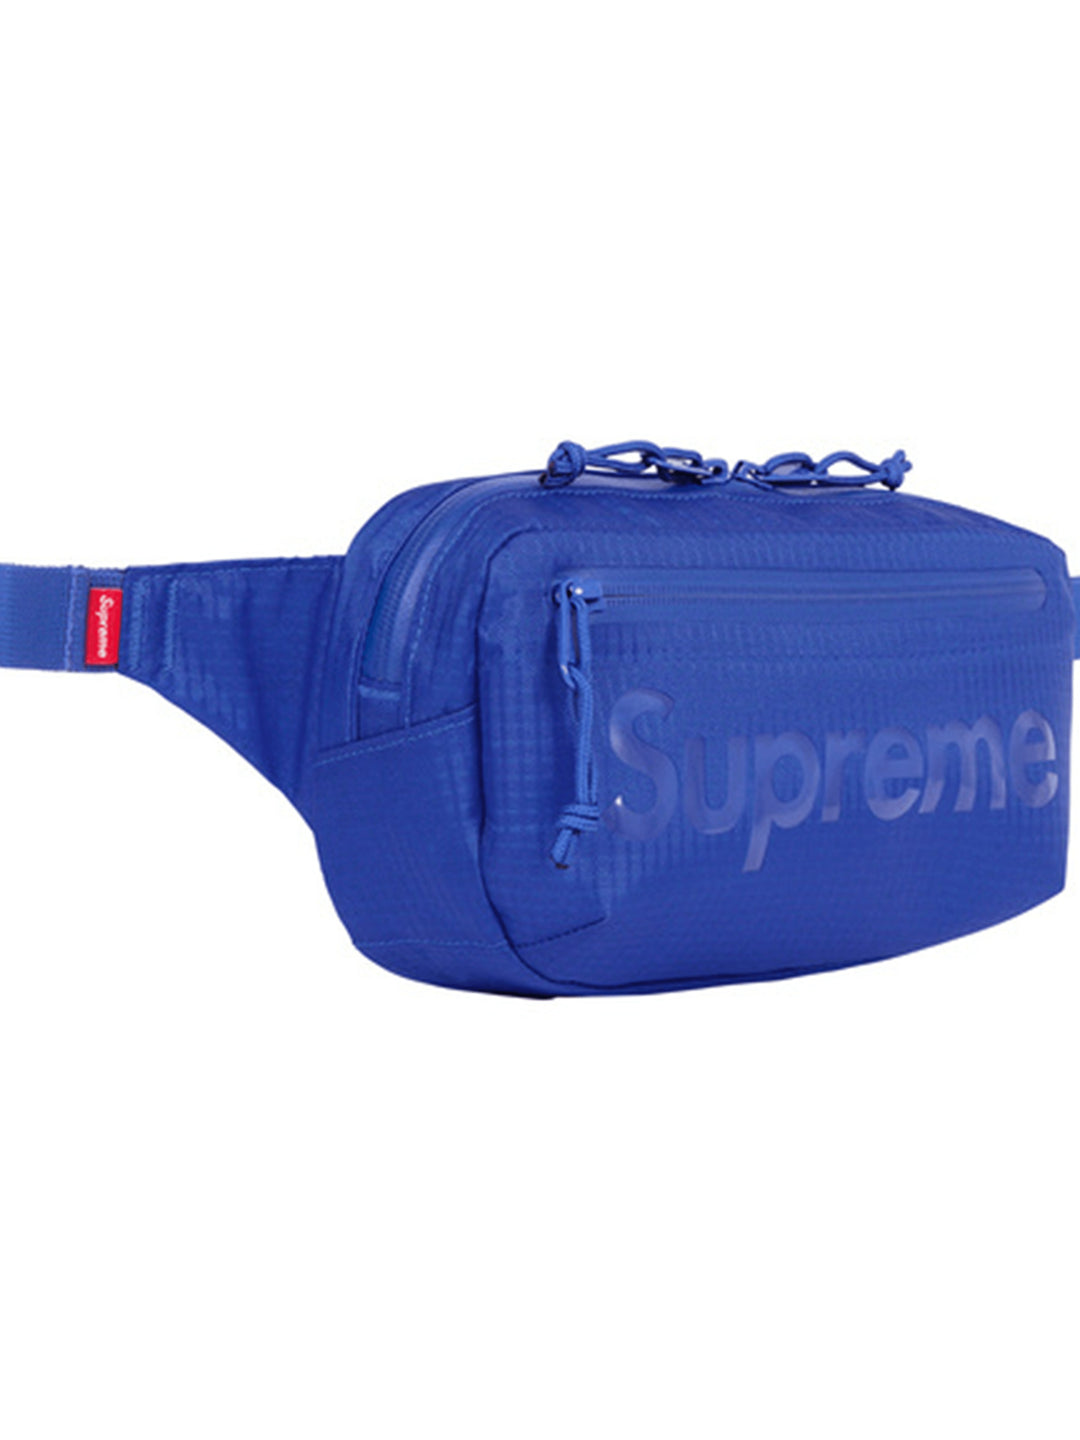 Supreme Waist Bag Royal [SS21] Prior